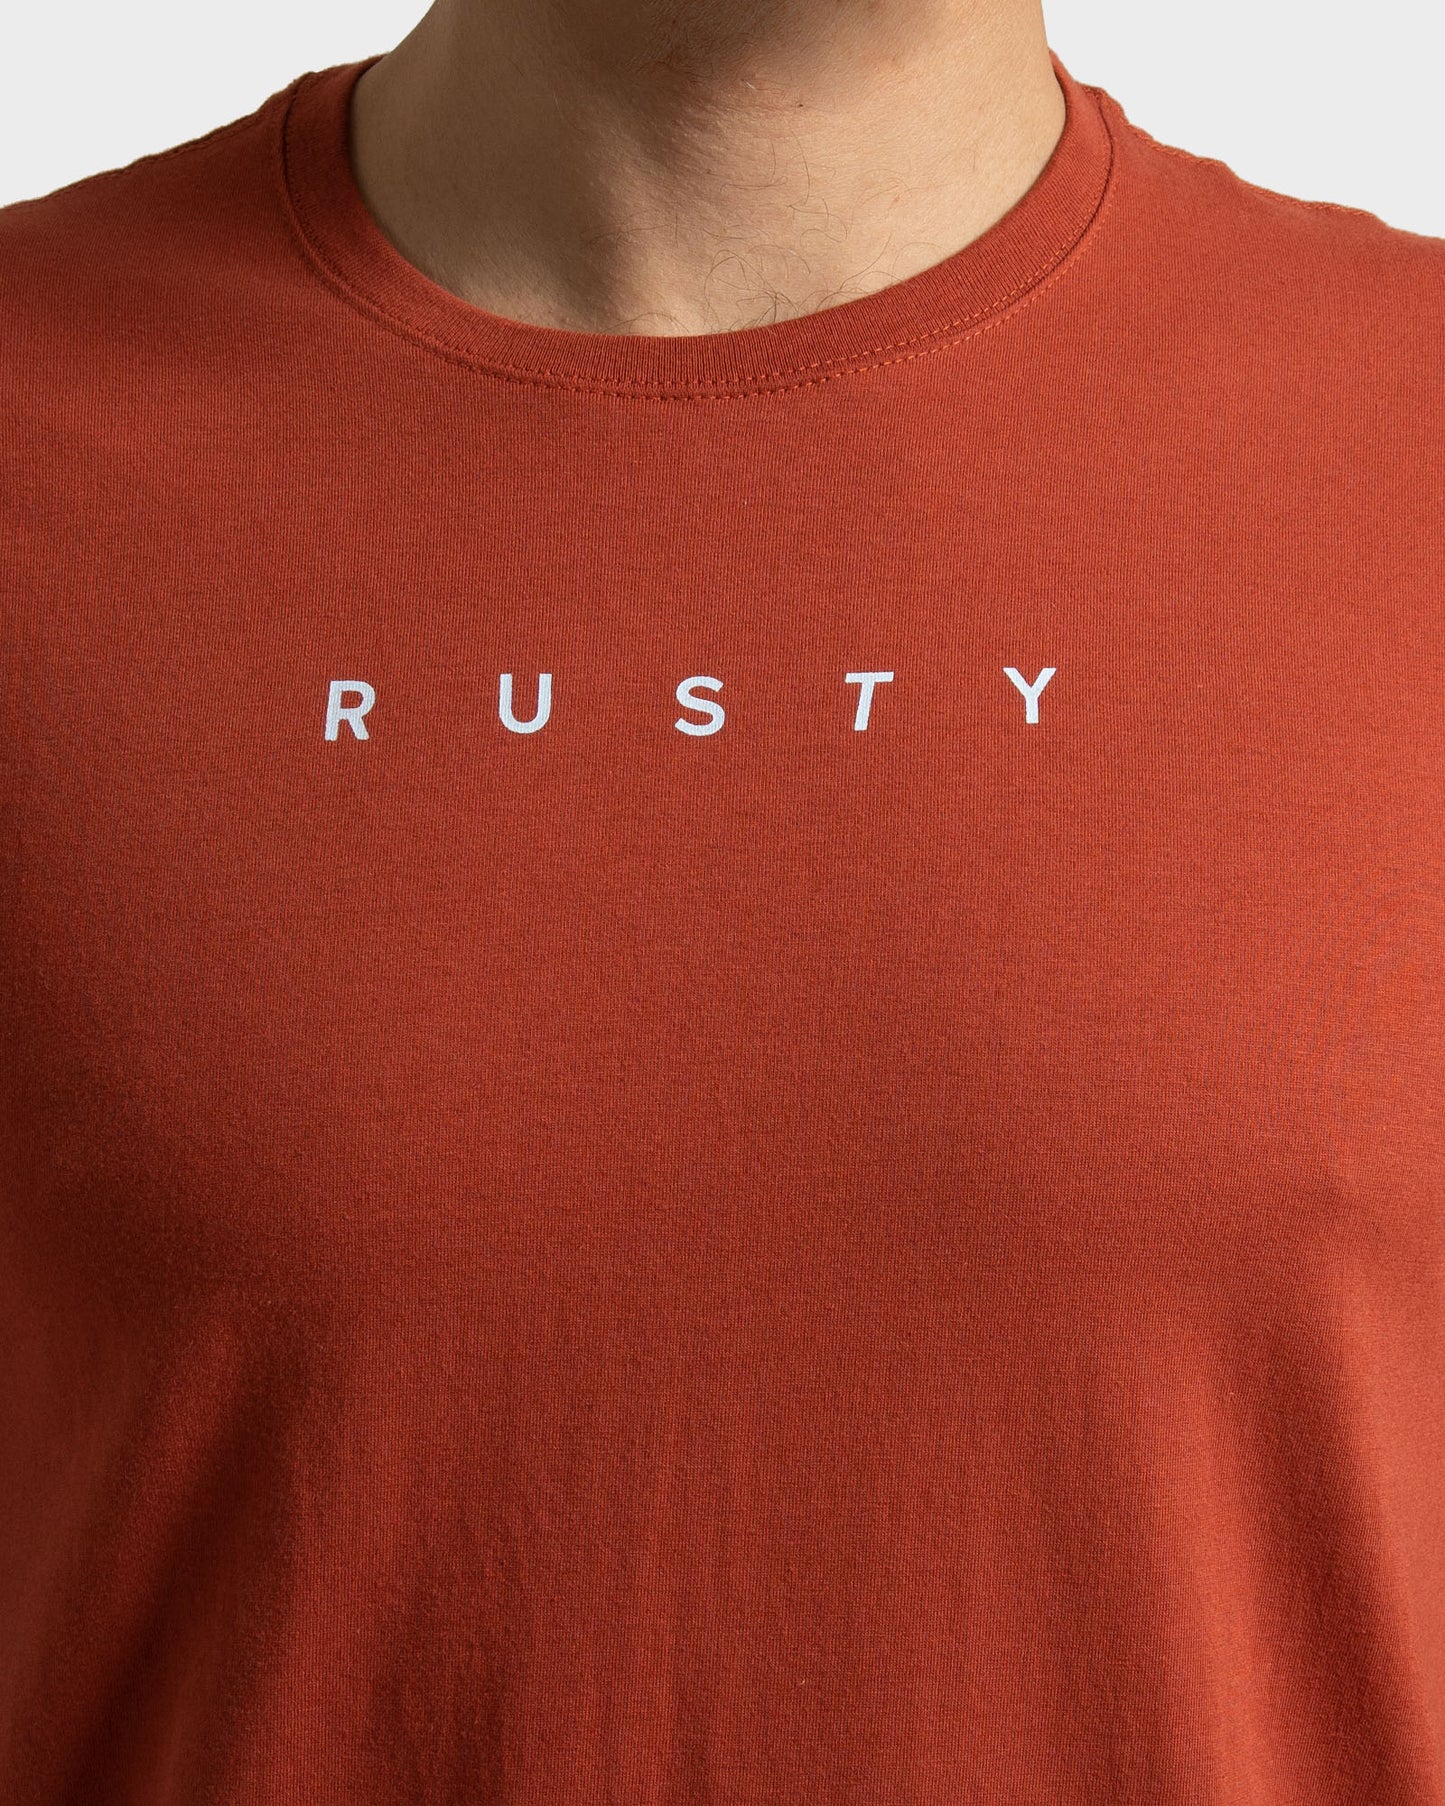 Camiseta Rusty Short Cut Vermelho